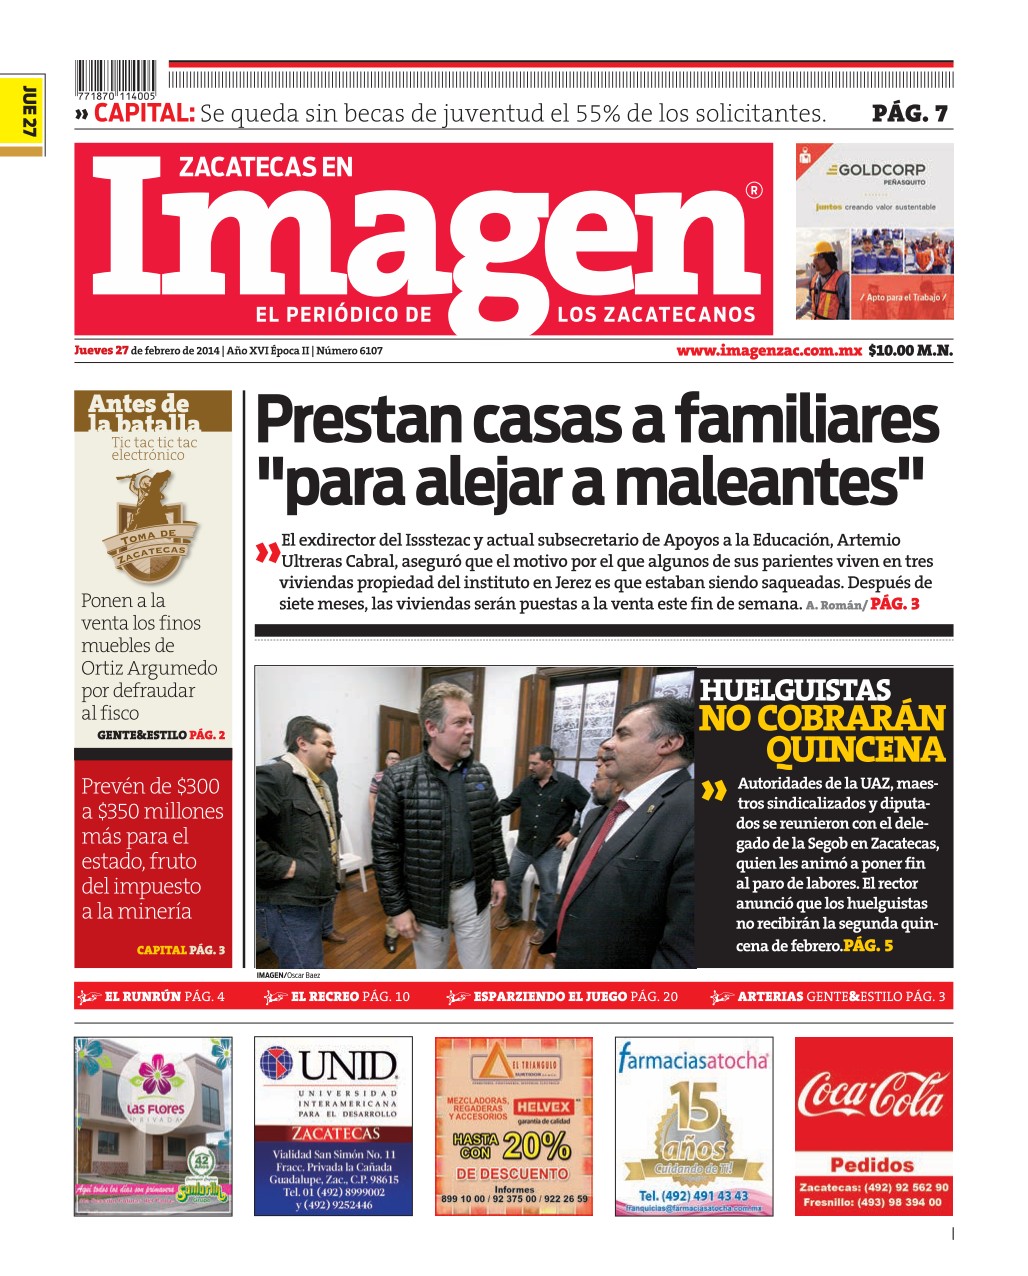 Imagen Zacatecas edición del 27 de Febrero 2014